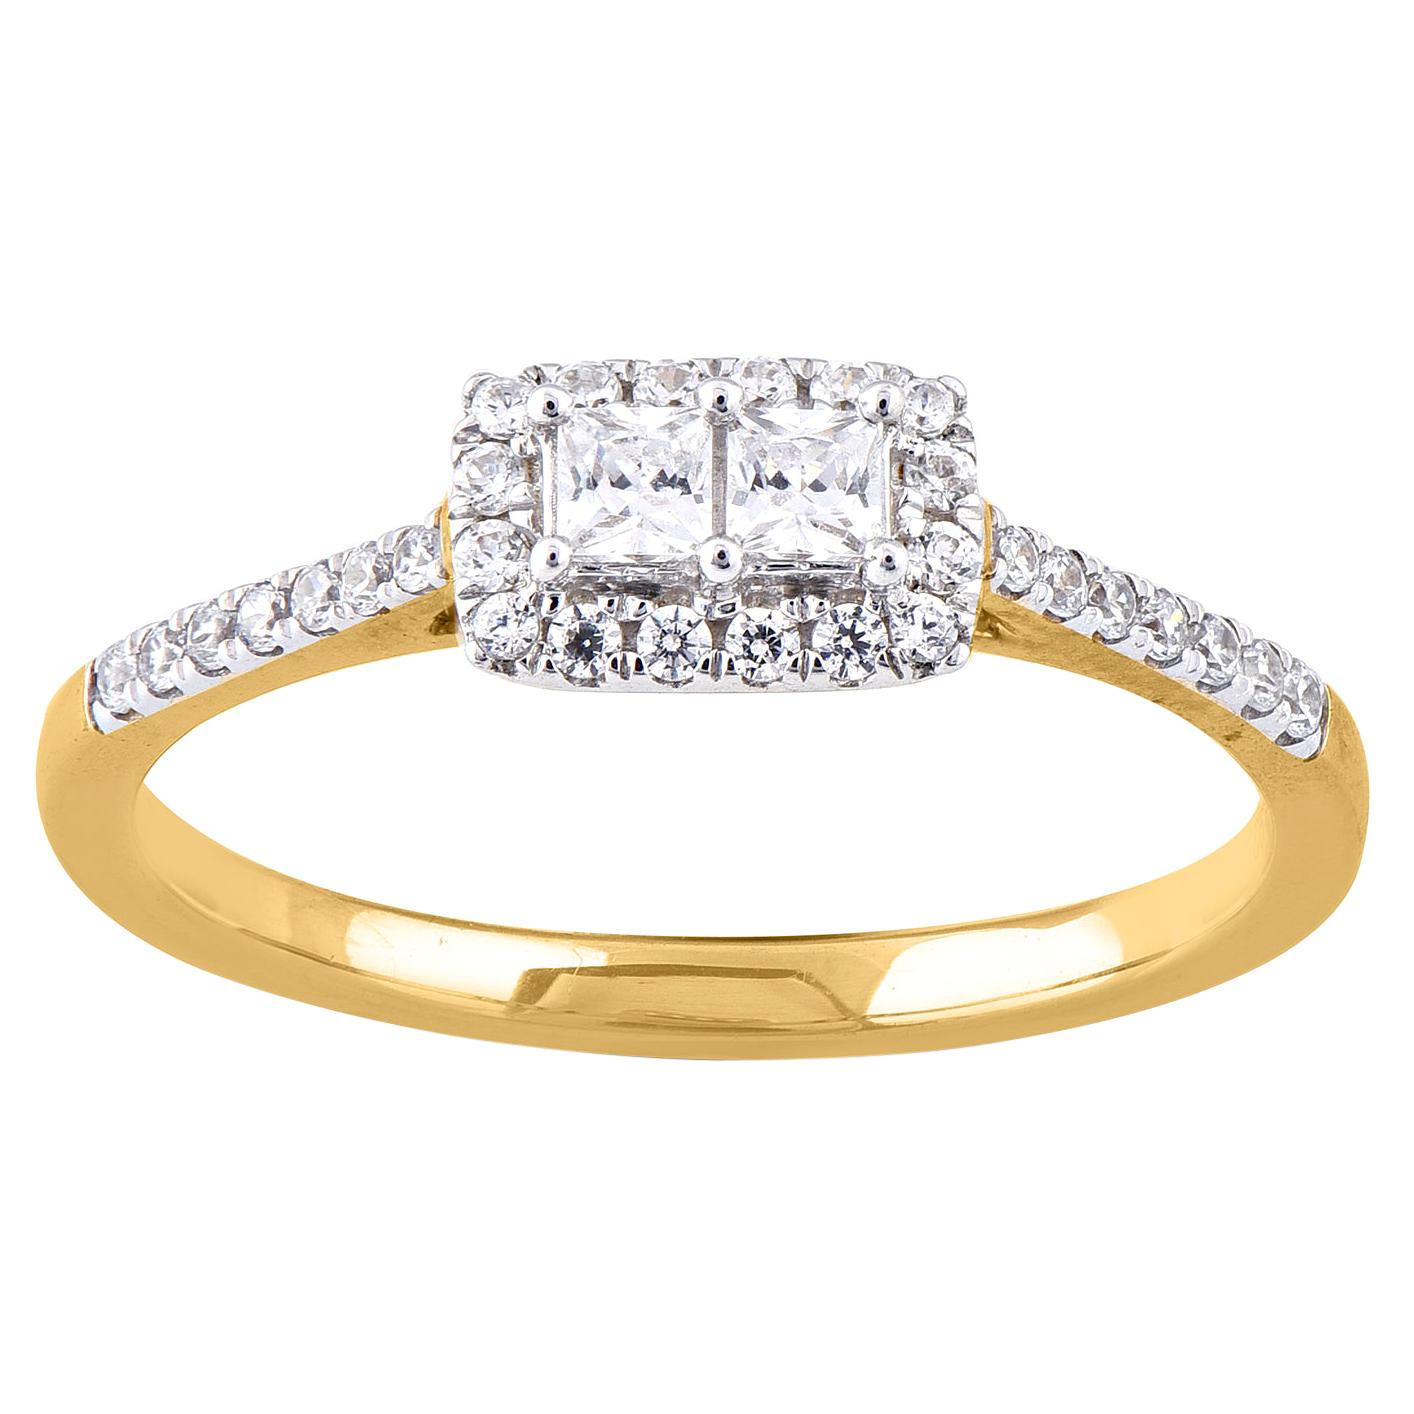 TJD 0.33 Carat Princess/ Round Diamond 14 Karat Yellow Gold Engagement Ring